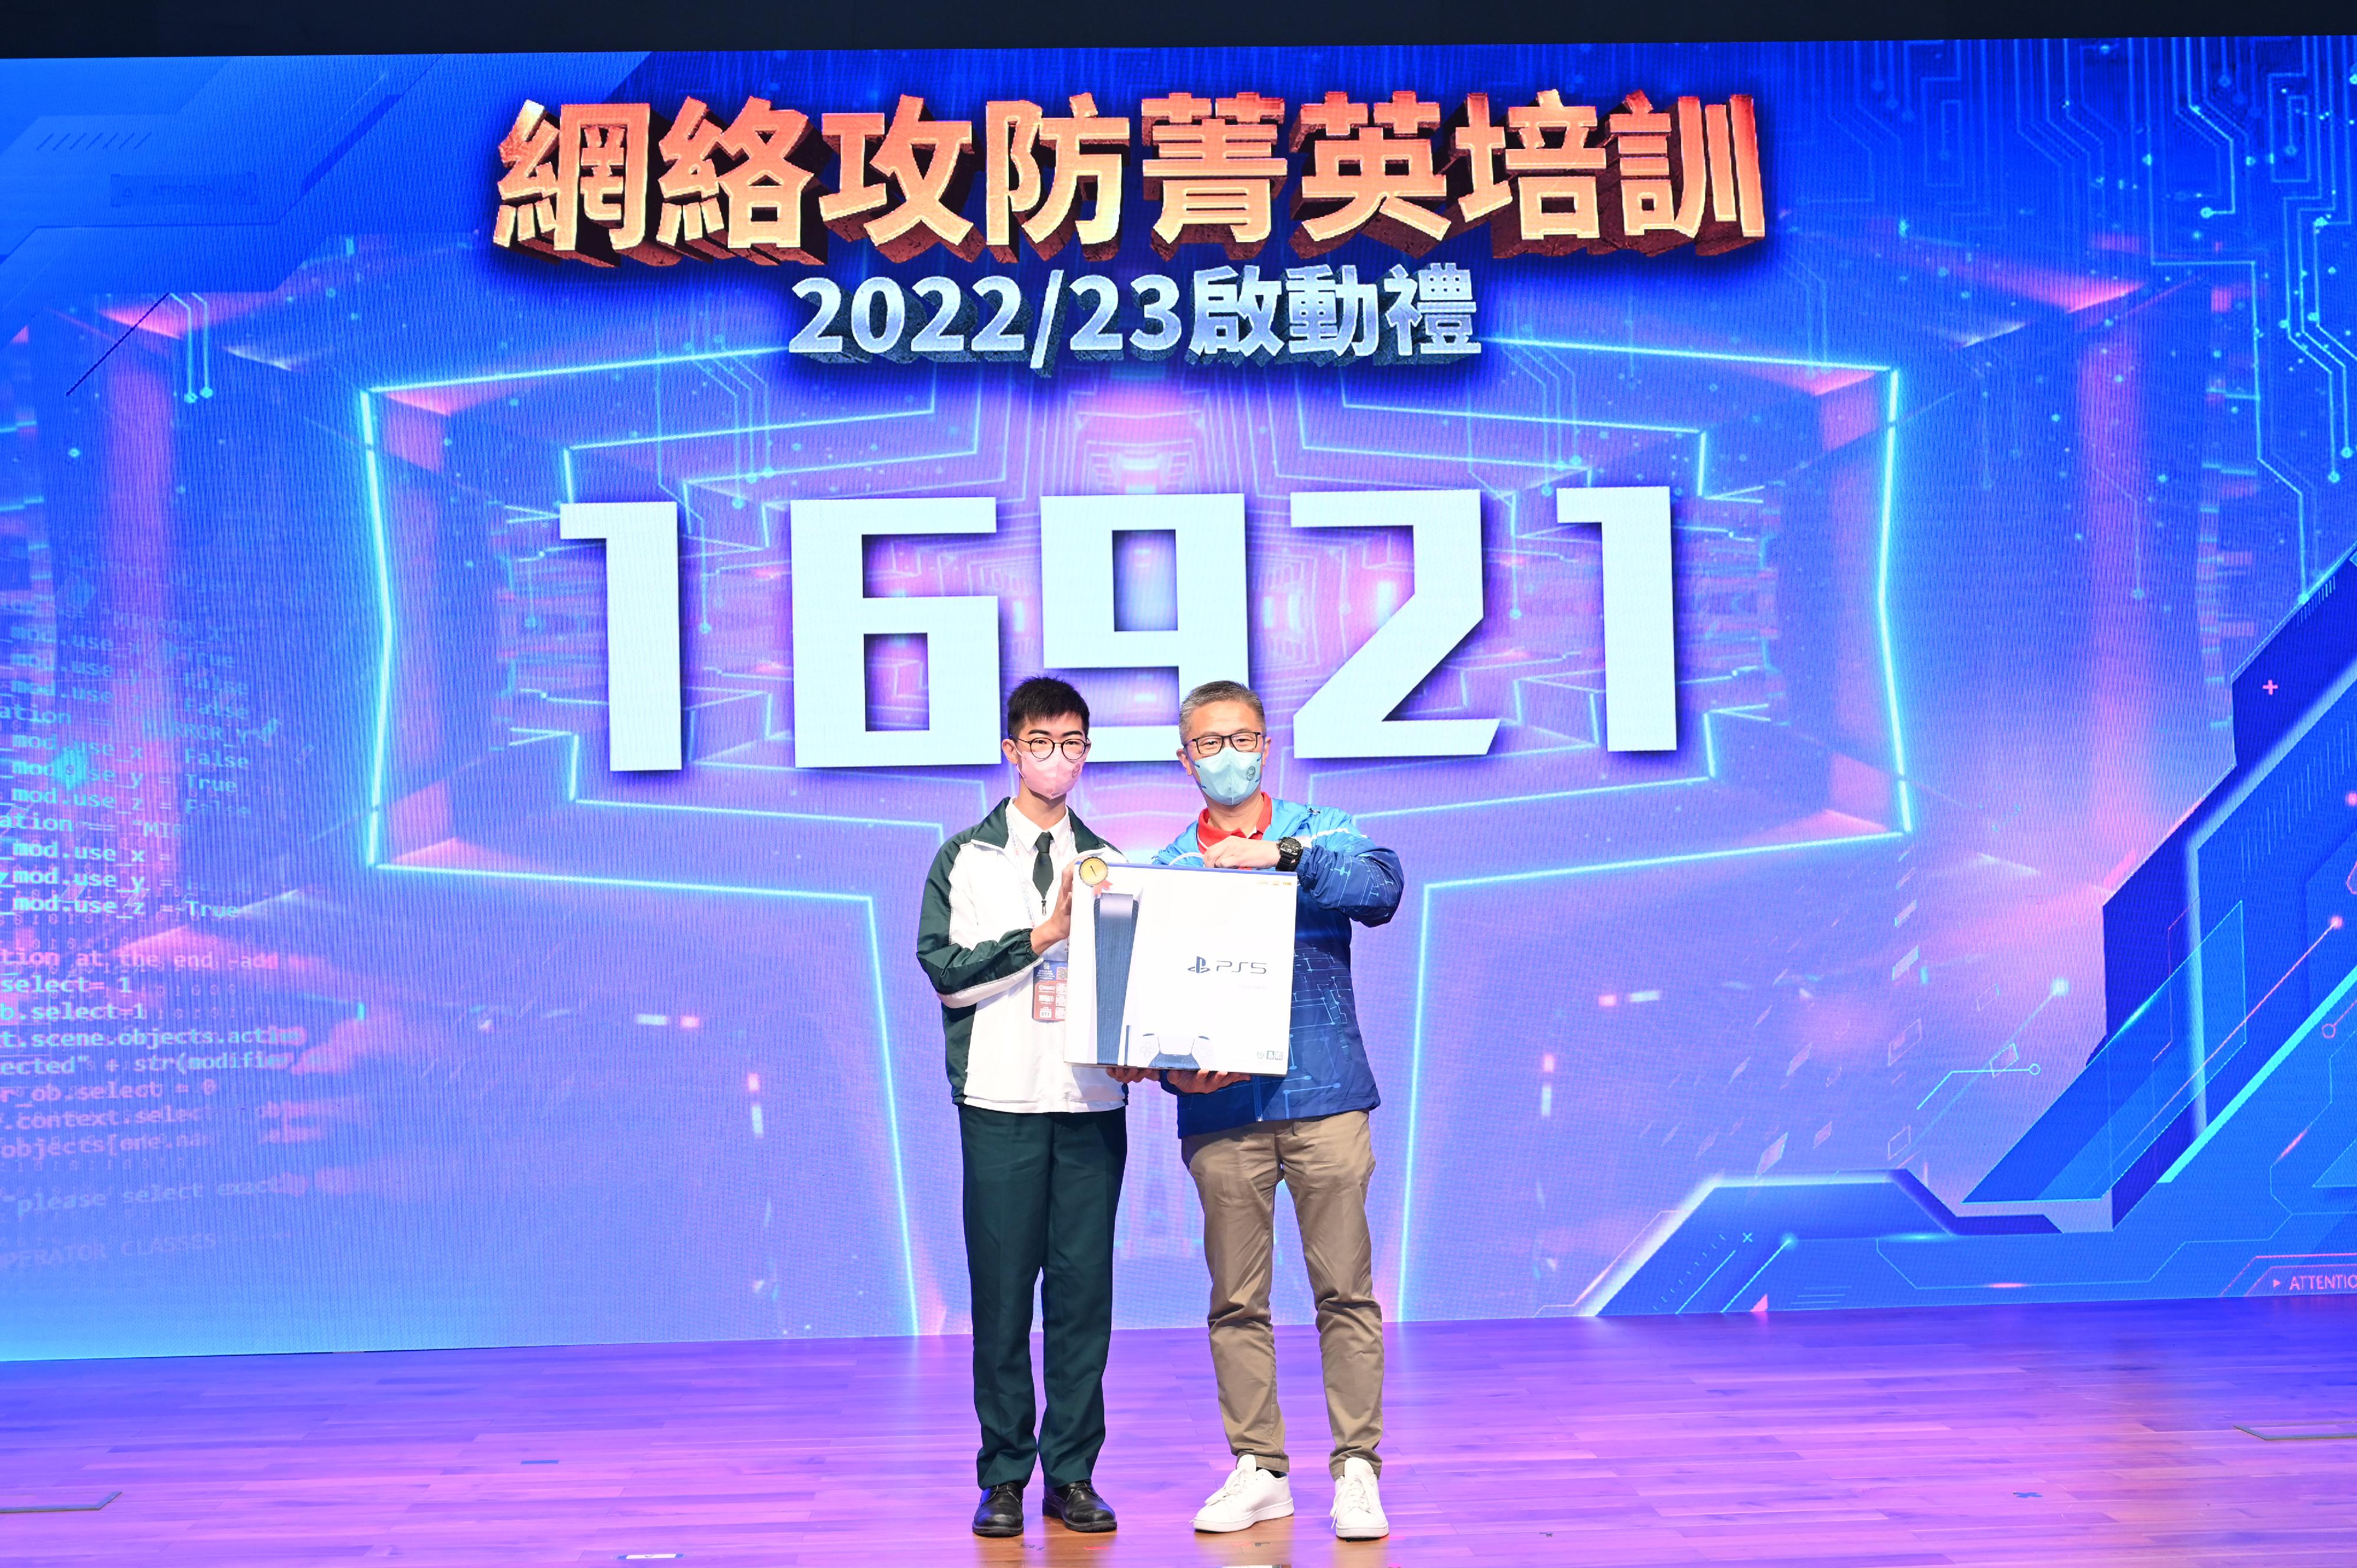 警務處今日（十二月十日）在香港都會大學舉行「網絡攻防菁英培訓2022/23」啟動禮。圖示警務處處長蕭澤頤頒奬予問答遊戲的優勝者。